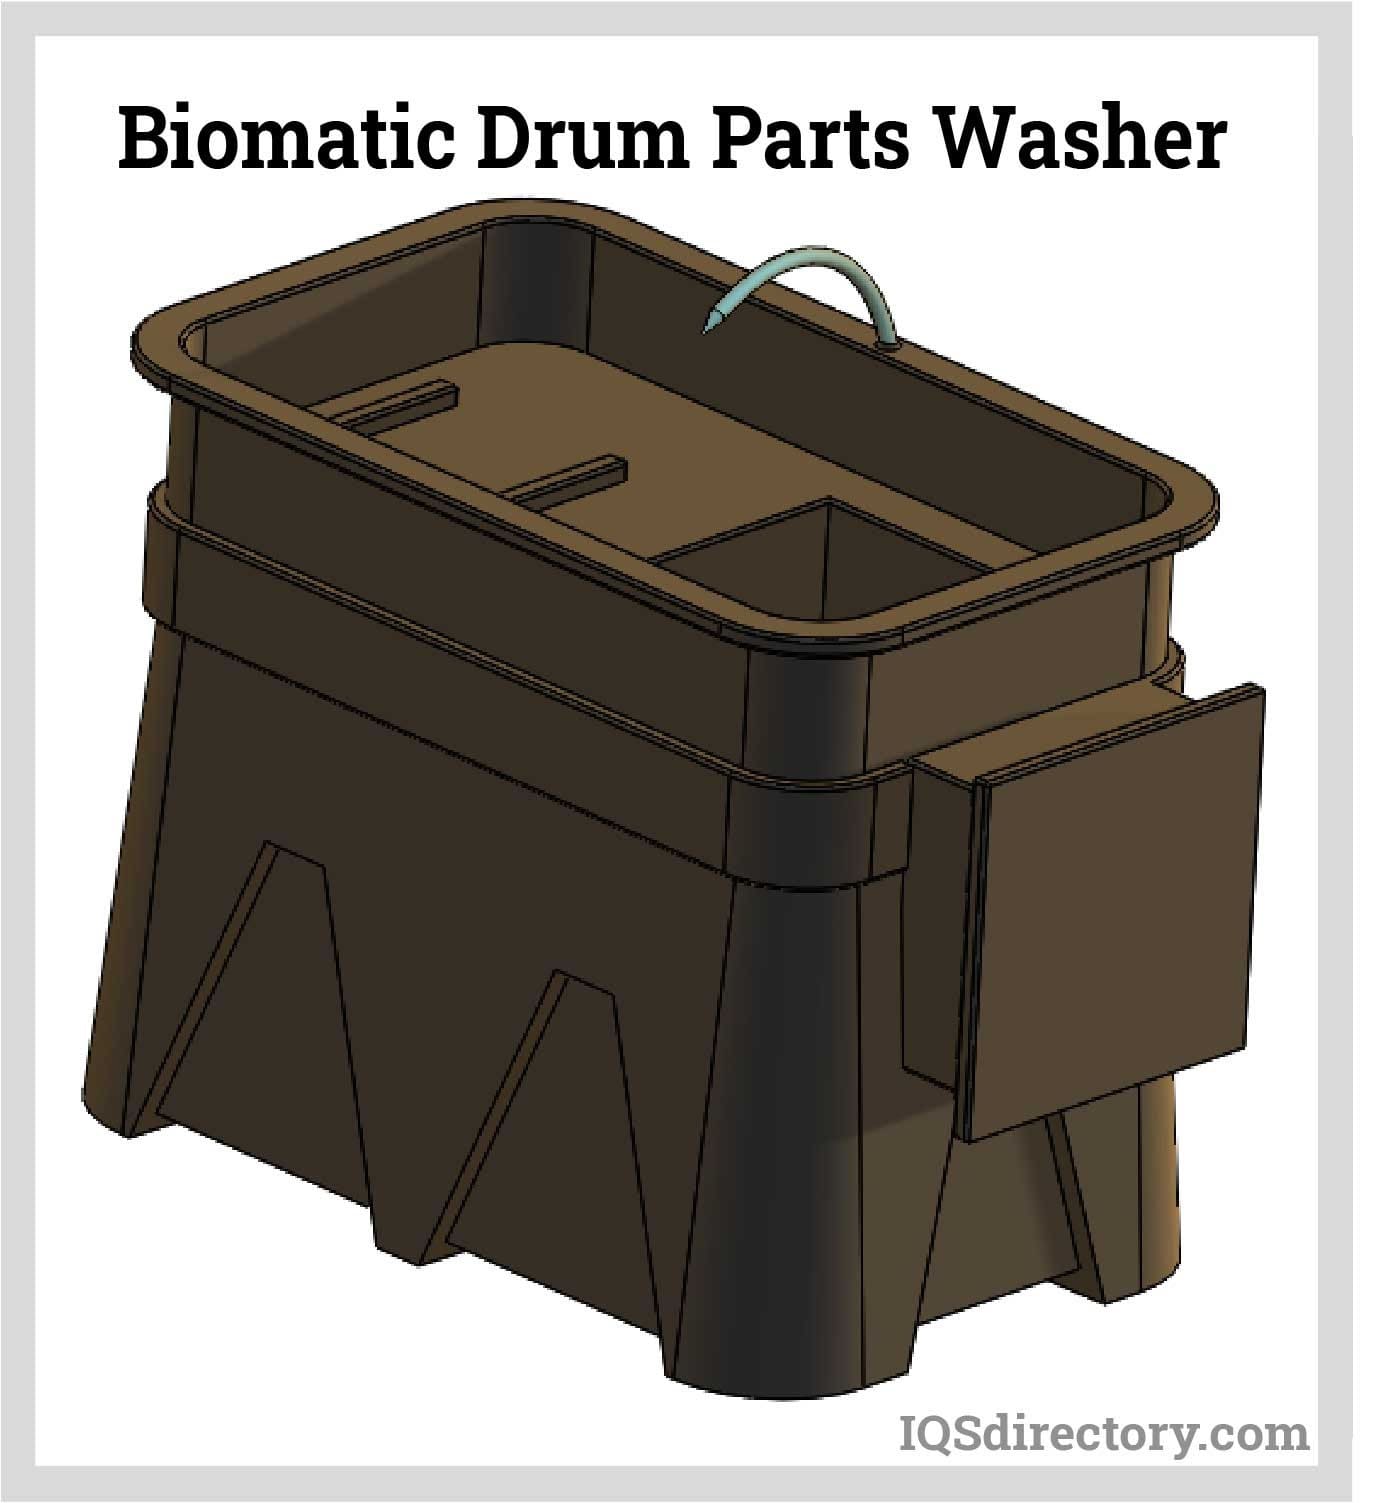 Bio-matic Drum Parts Washer